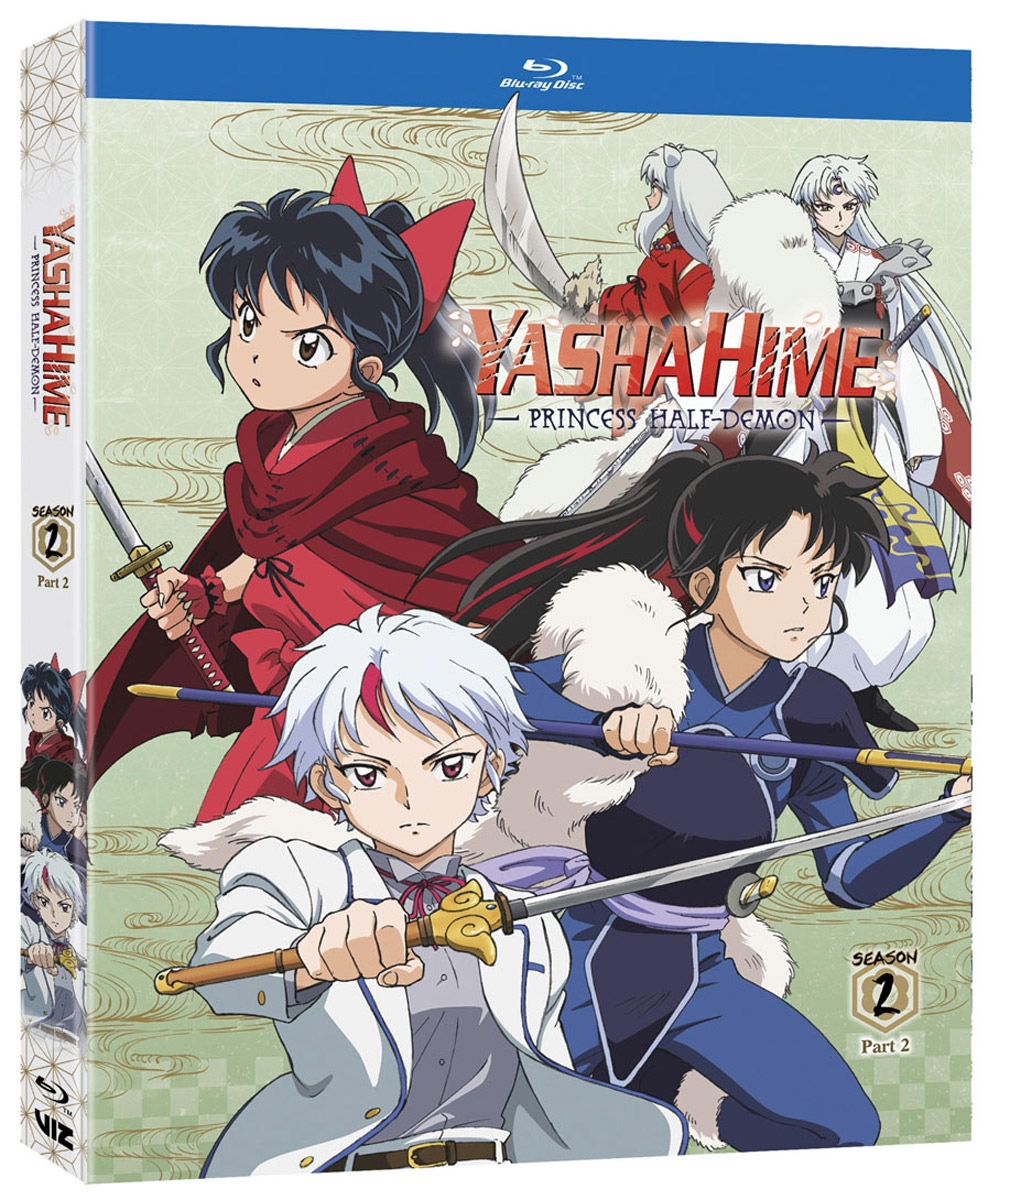 Yashahime Princess Half-Demon Season 2 Part 2 Limited Edition Blu-Ray image count 1